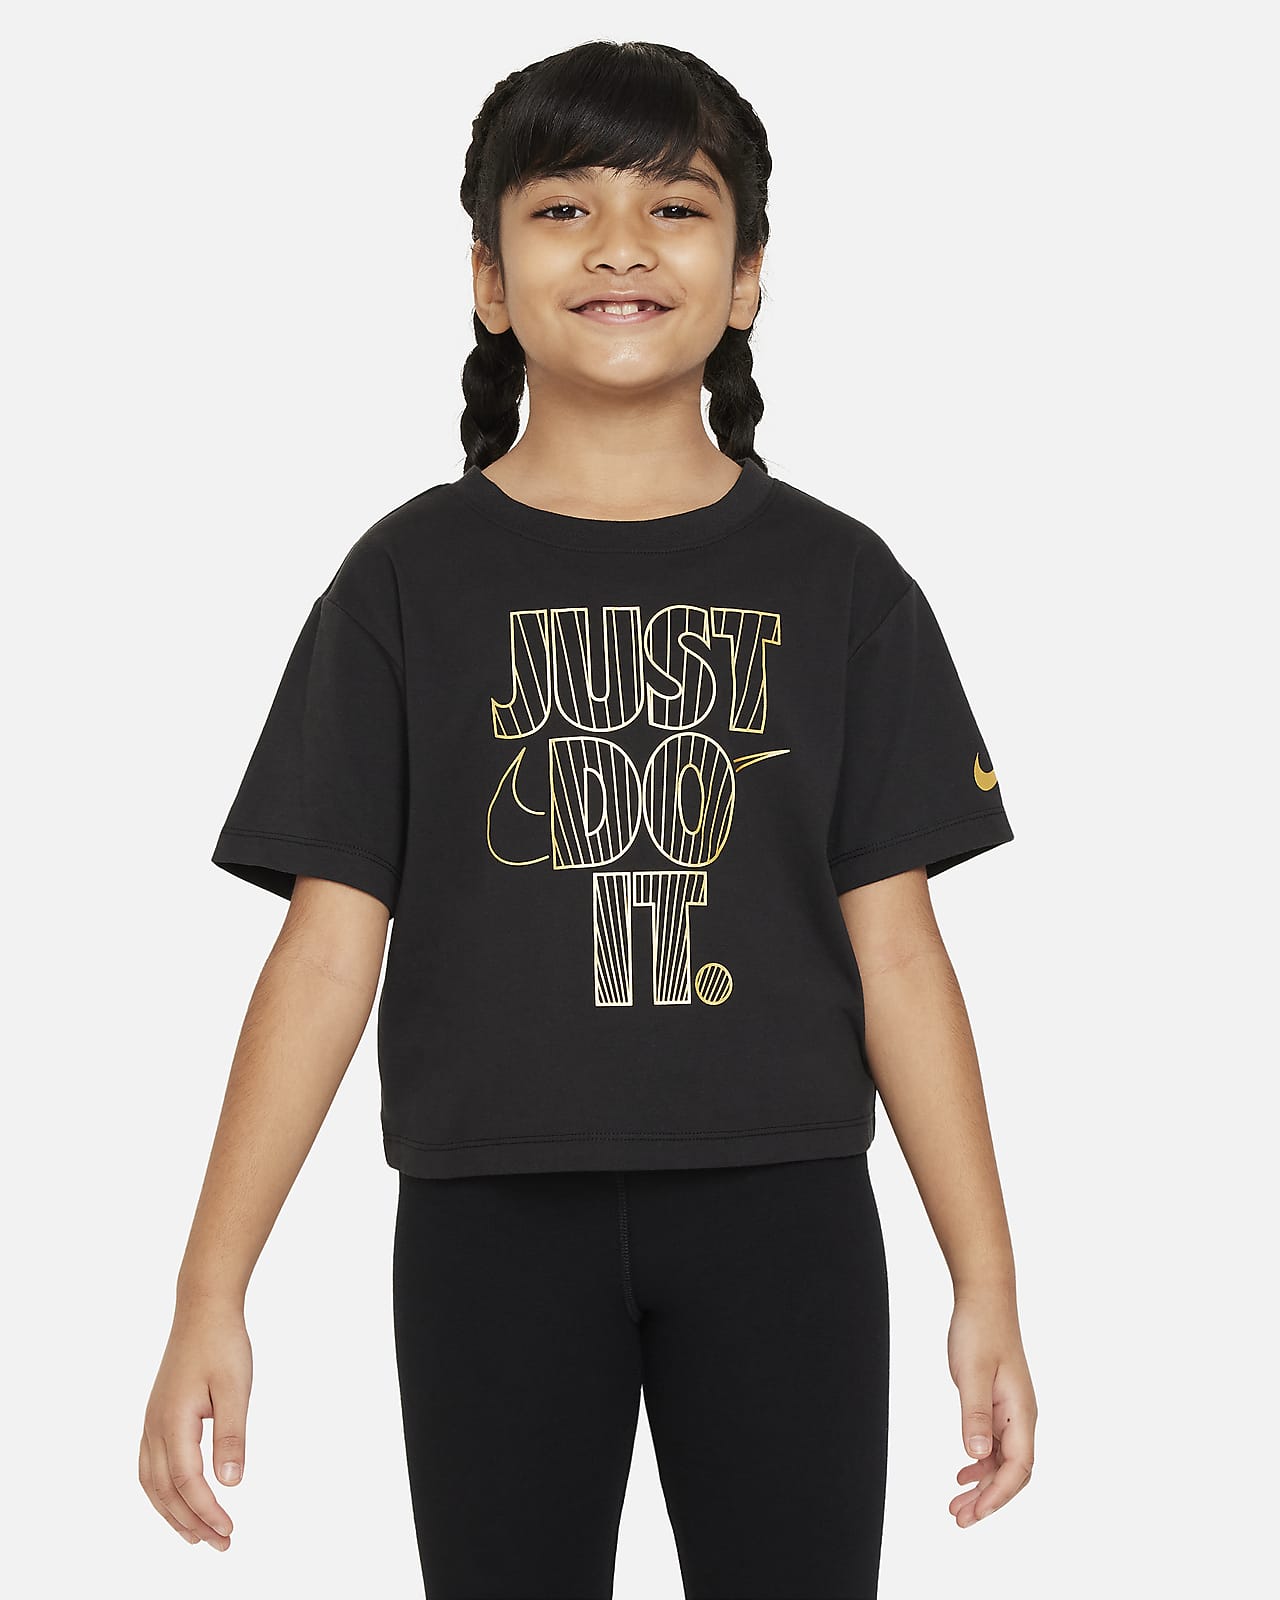 Tričko Nike Shine Boxy pro malé děti